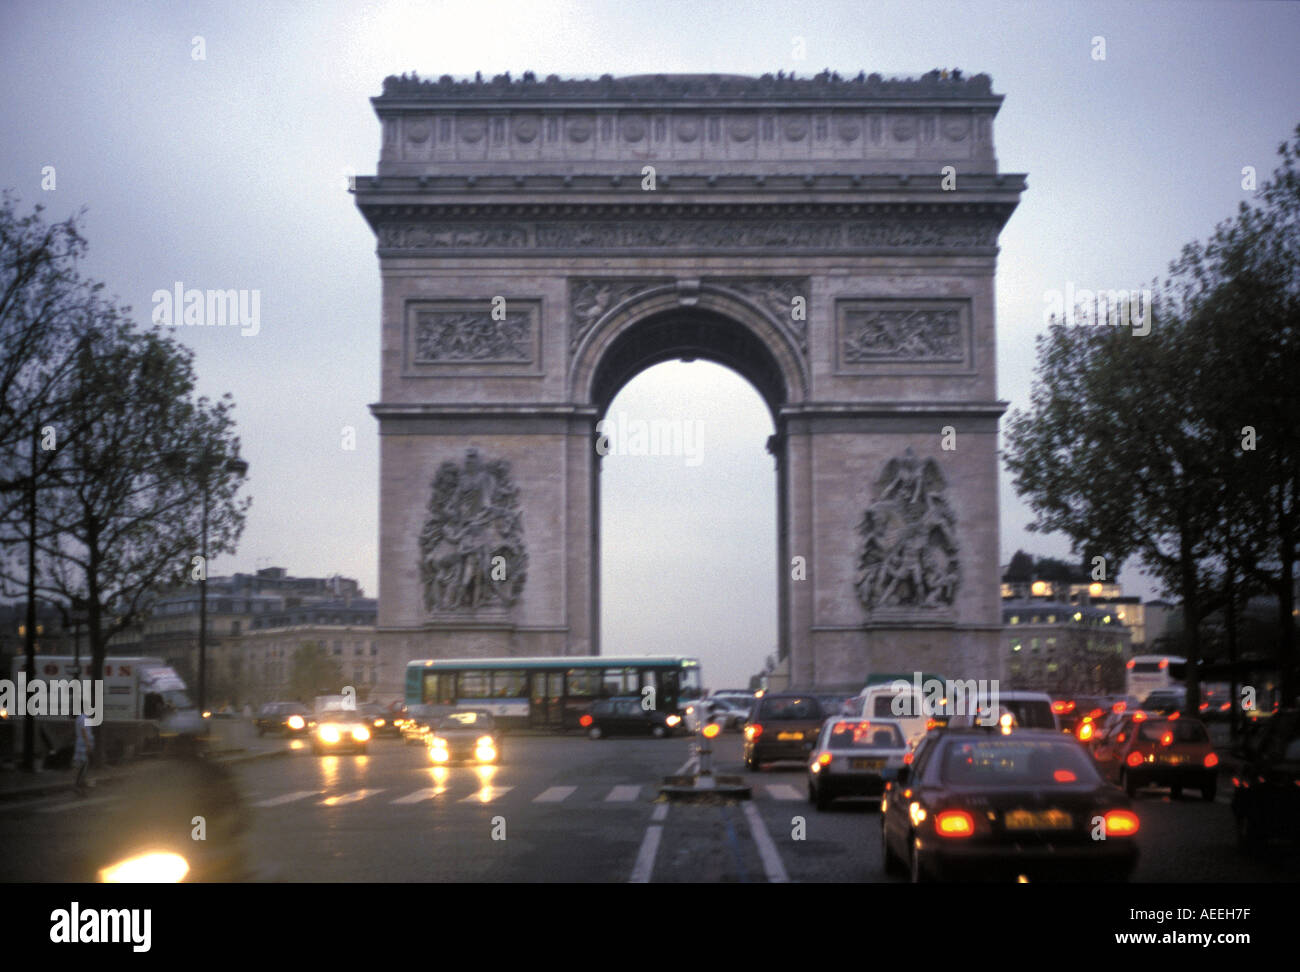 Arc de Triomphe in Paris France Stock Photo